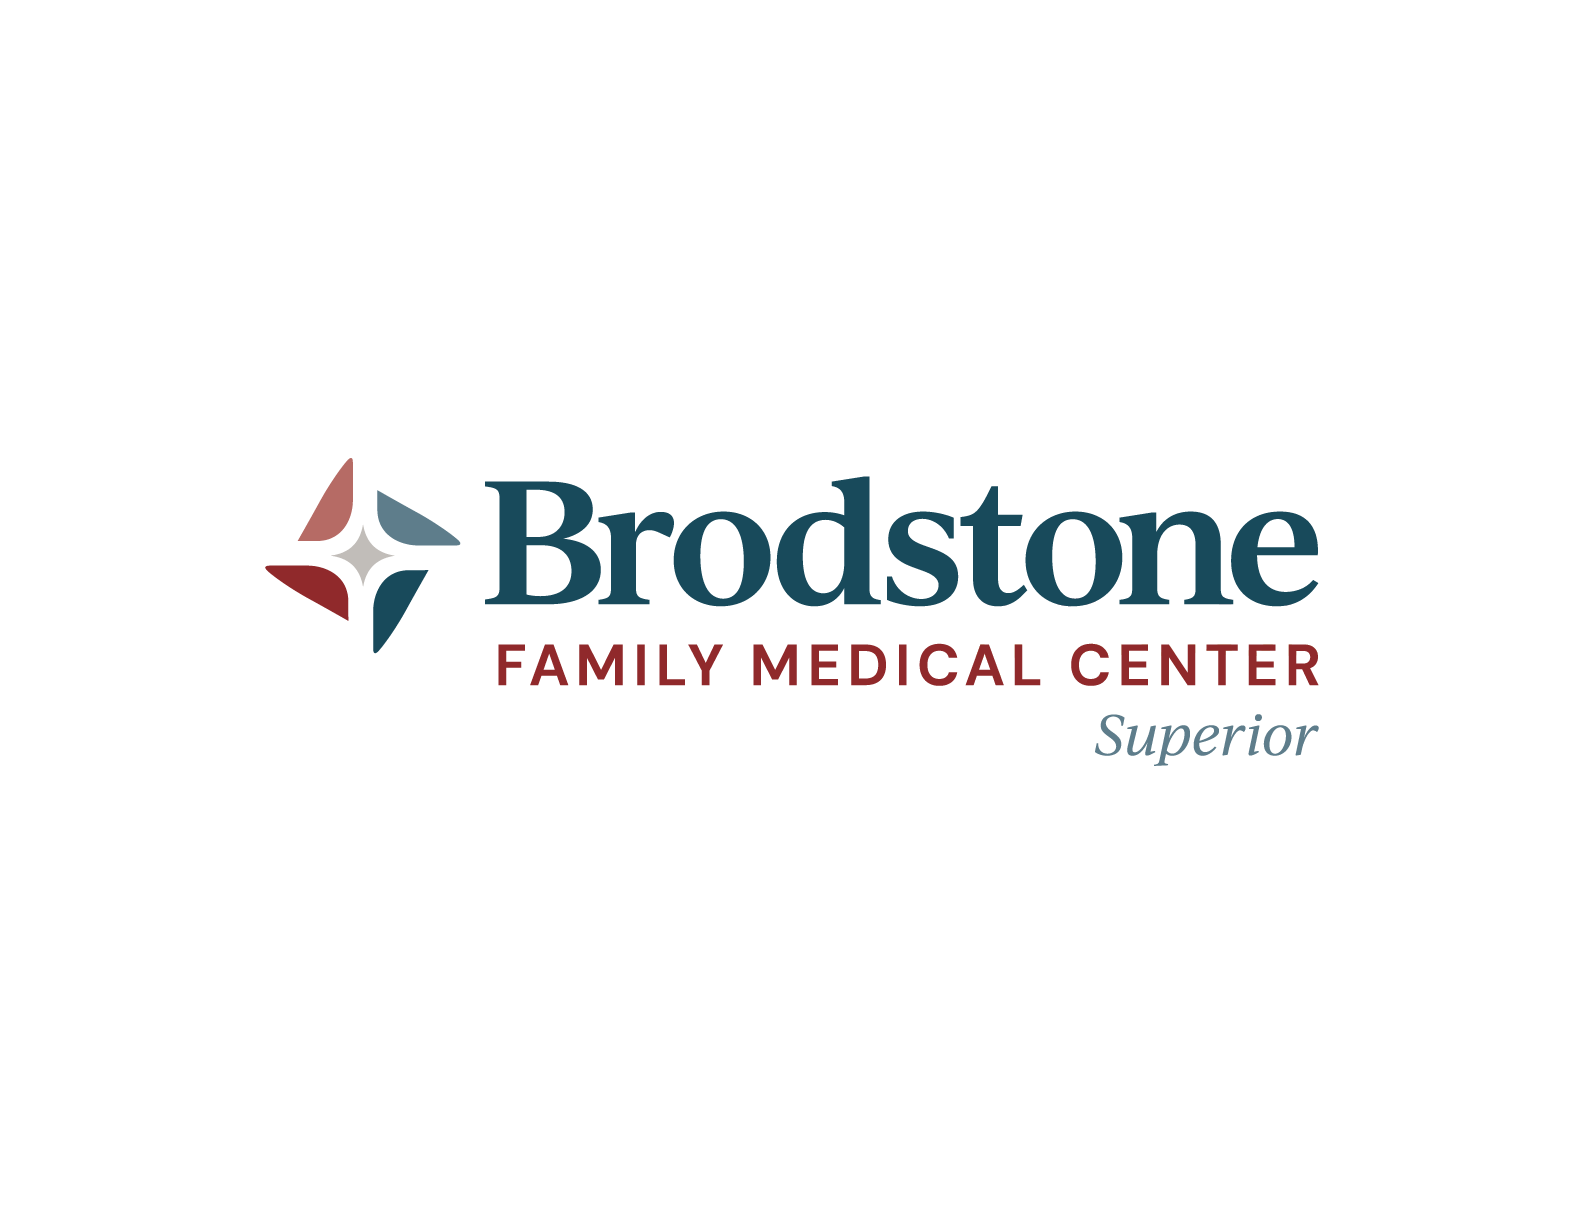 Brodstone Healthcare Brand Guide Superior